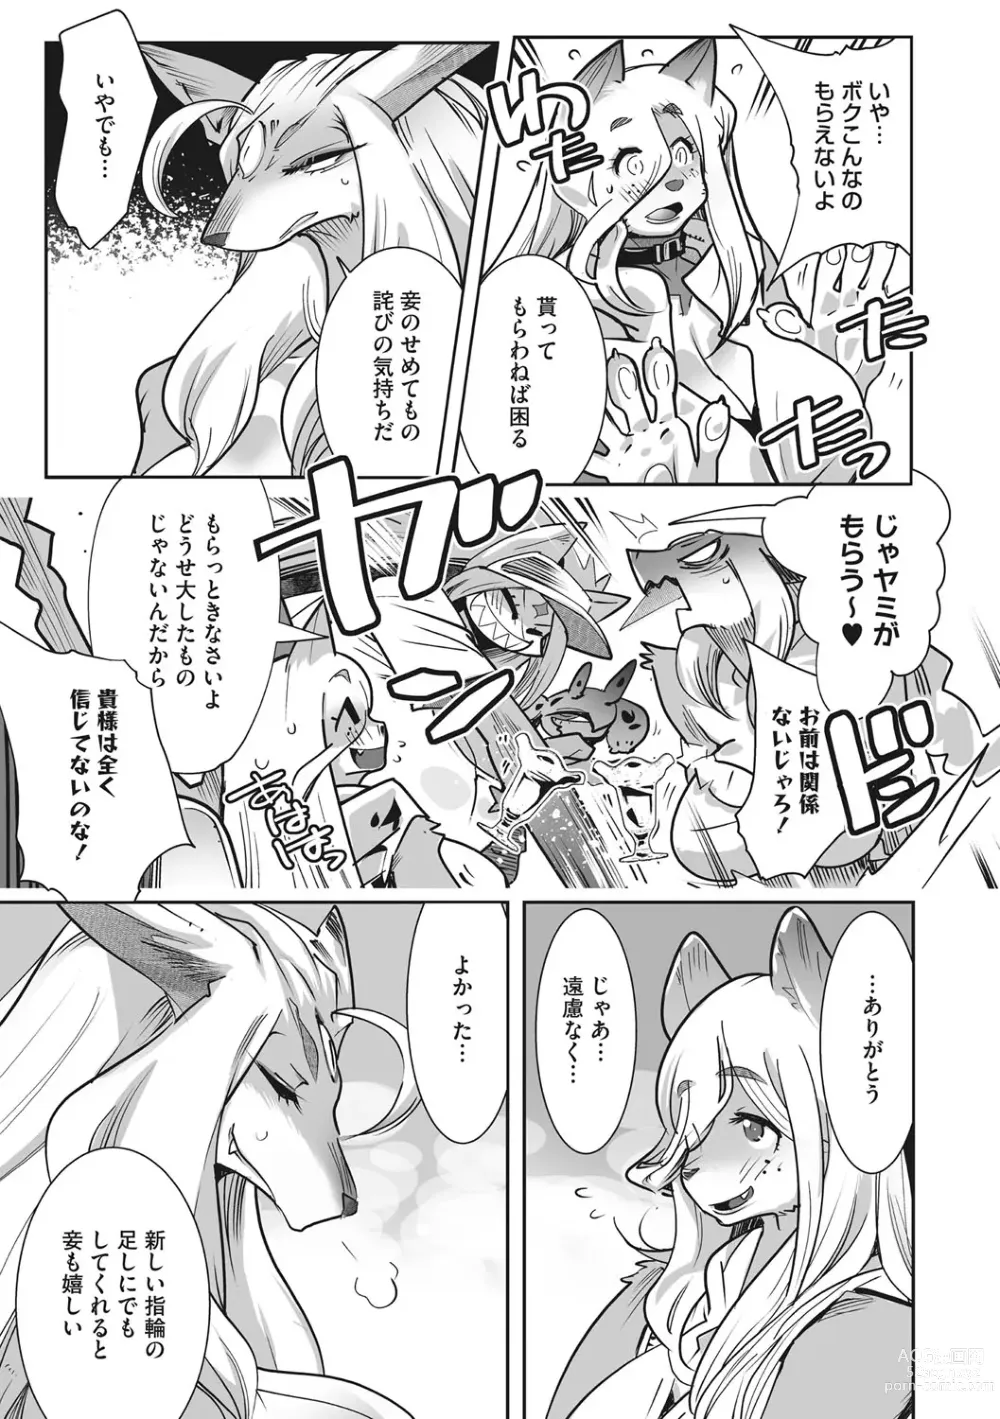 Page 232 of manga Kemono to Koishite Nani ga Warui!